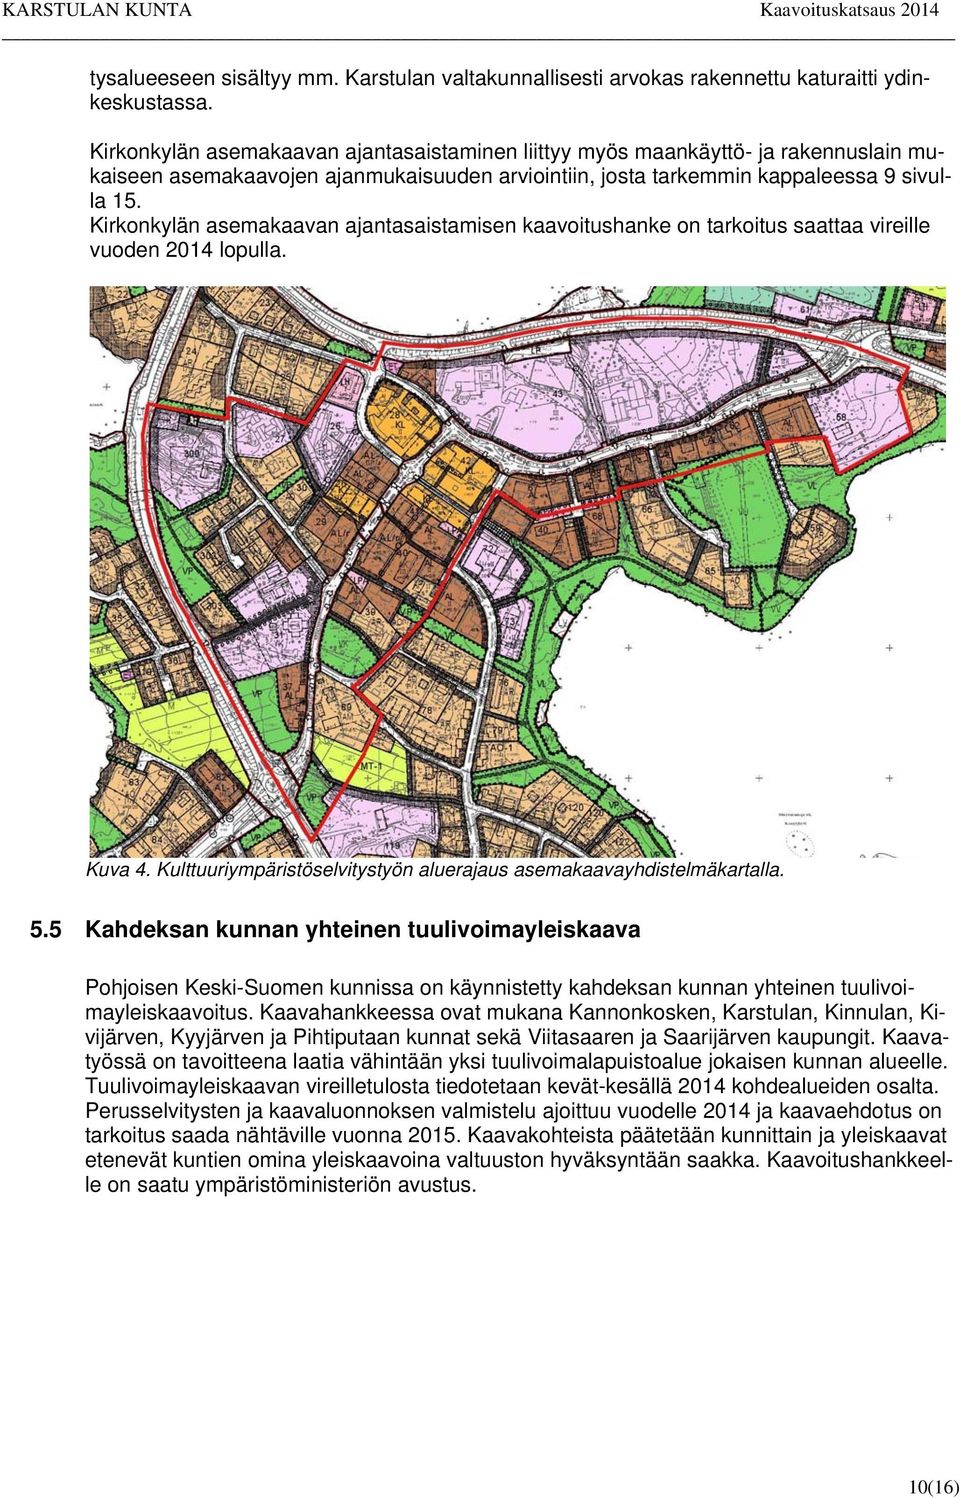 Kirkonkylän asemakaavan ajantasaistamisen kaavoitushanke on tarkoitus saattaa vireille vuoden 2014 lopulla. Kuva 4. Kulttuuriympäristöselvitystyön aluerajaus asemakaavayhdistelmäkartalla. 5.